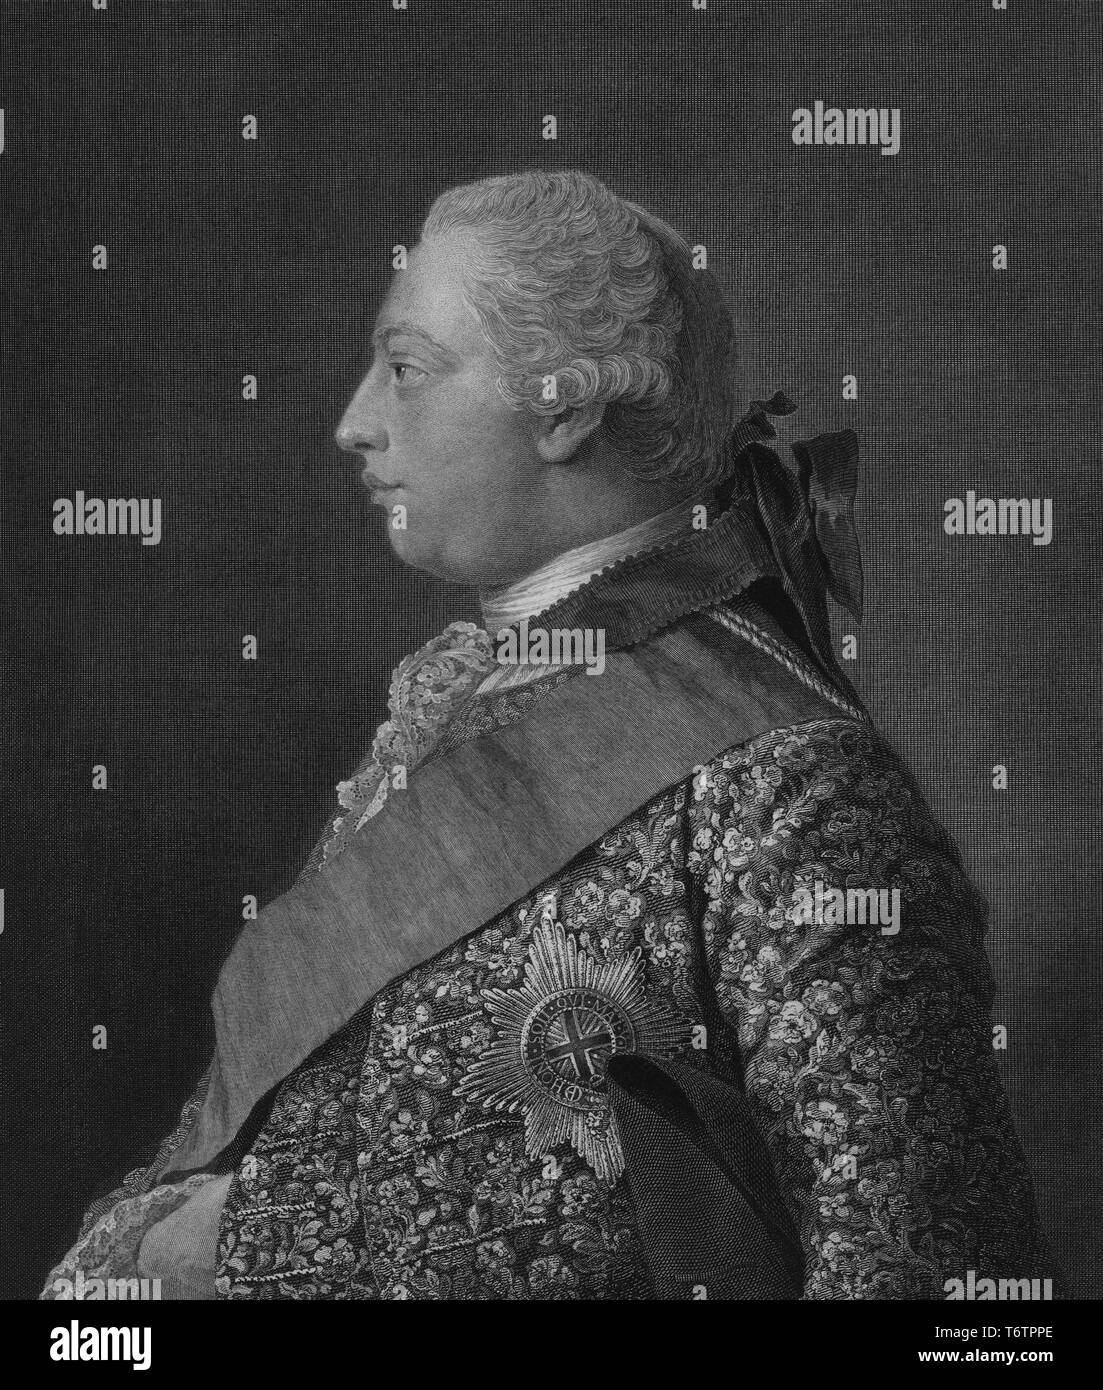 Graviert Porträt von George William Frederick, Georg III. von Großbritannien, König von Großbritannien, Frankreich und Irland, 1754. Von der New York Public Library. () Stockfoto